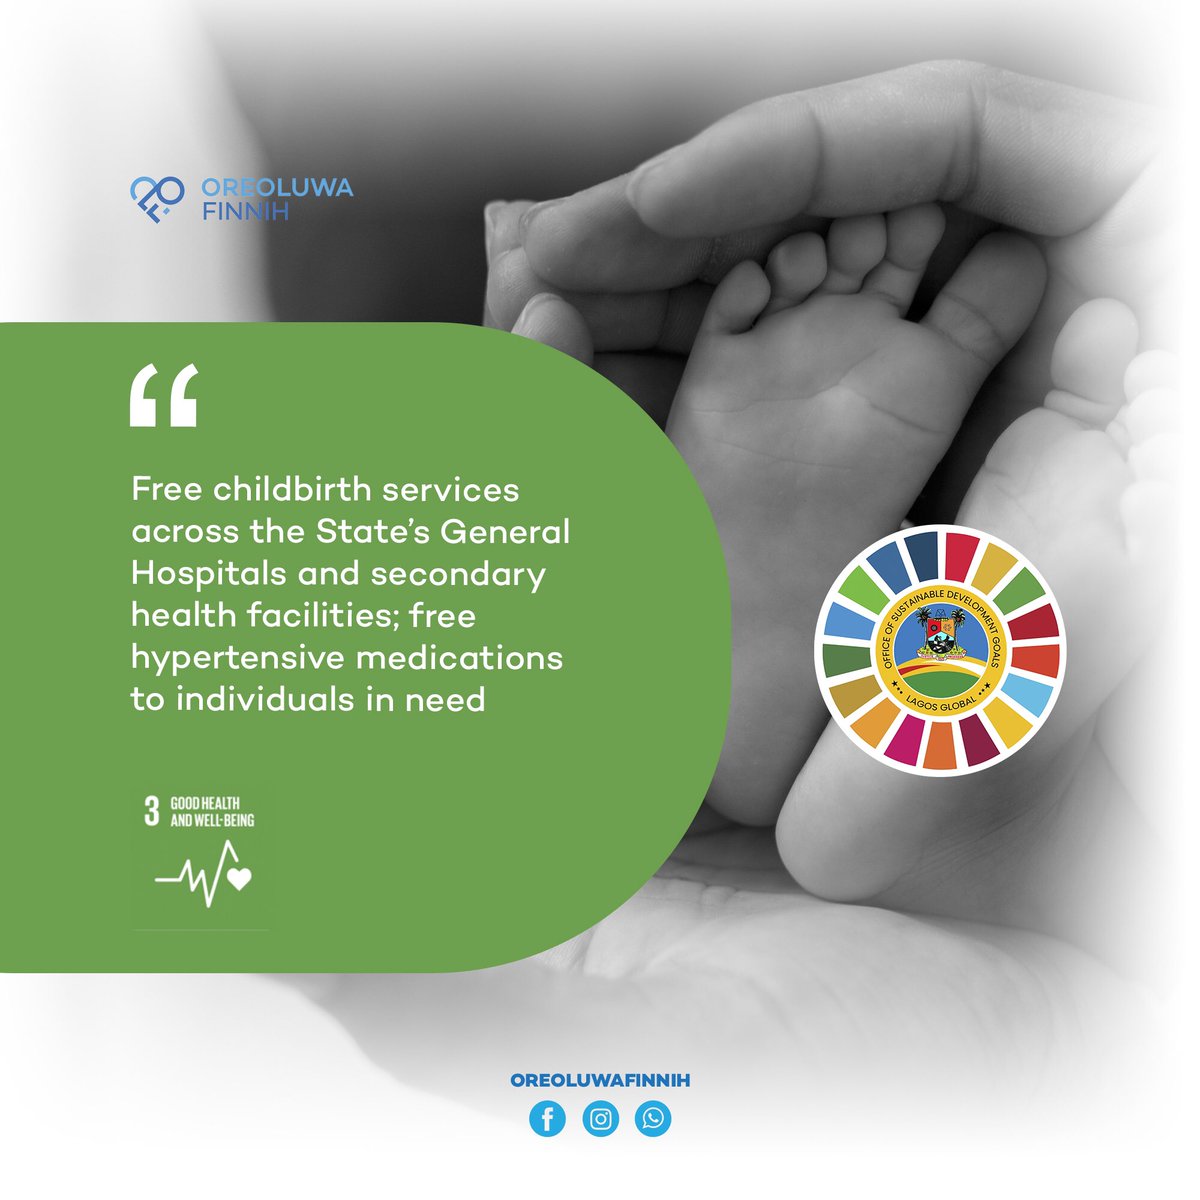 Let’s unite for Sustainable Development Goal 3 #SDG3 #HealthForAll